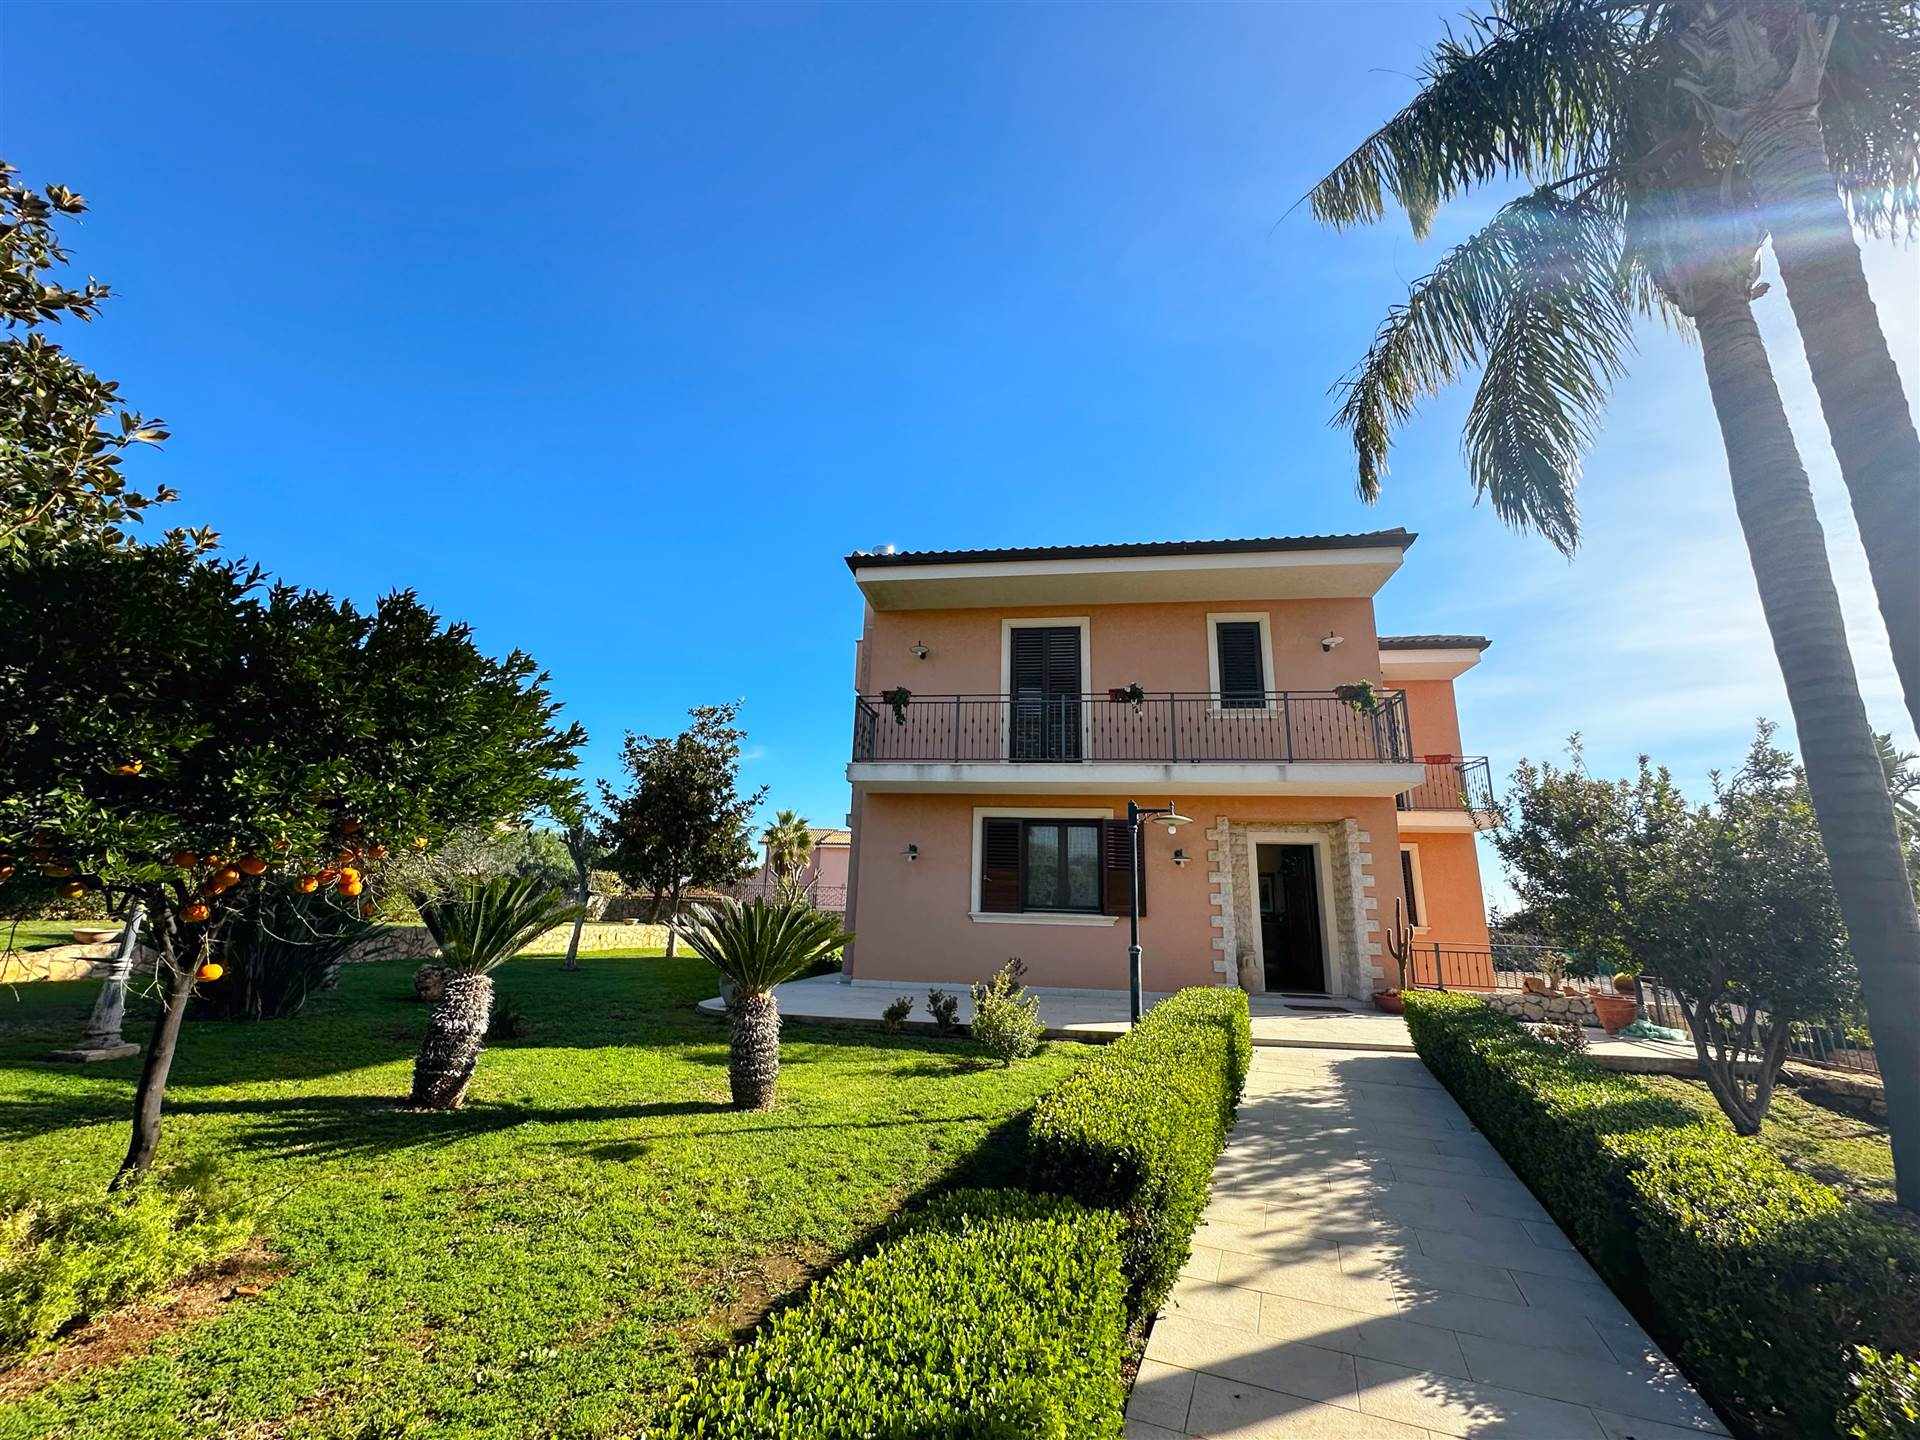 Villa in vendita a Siracusa, 6 locali, zona Località: TREMILIA, prezzo € 565.000 | CambioCasa.it